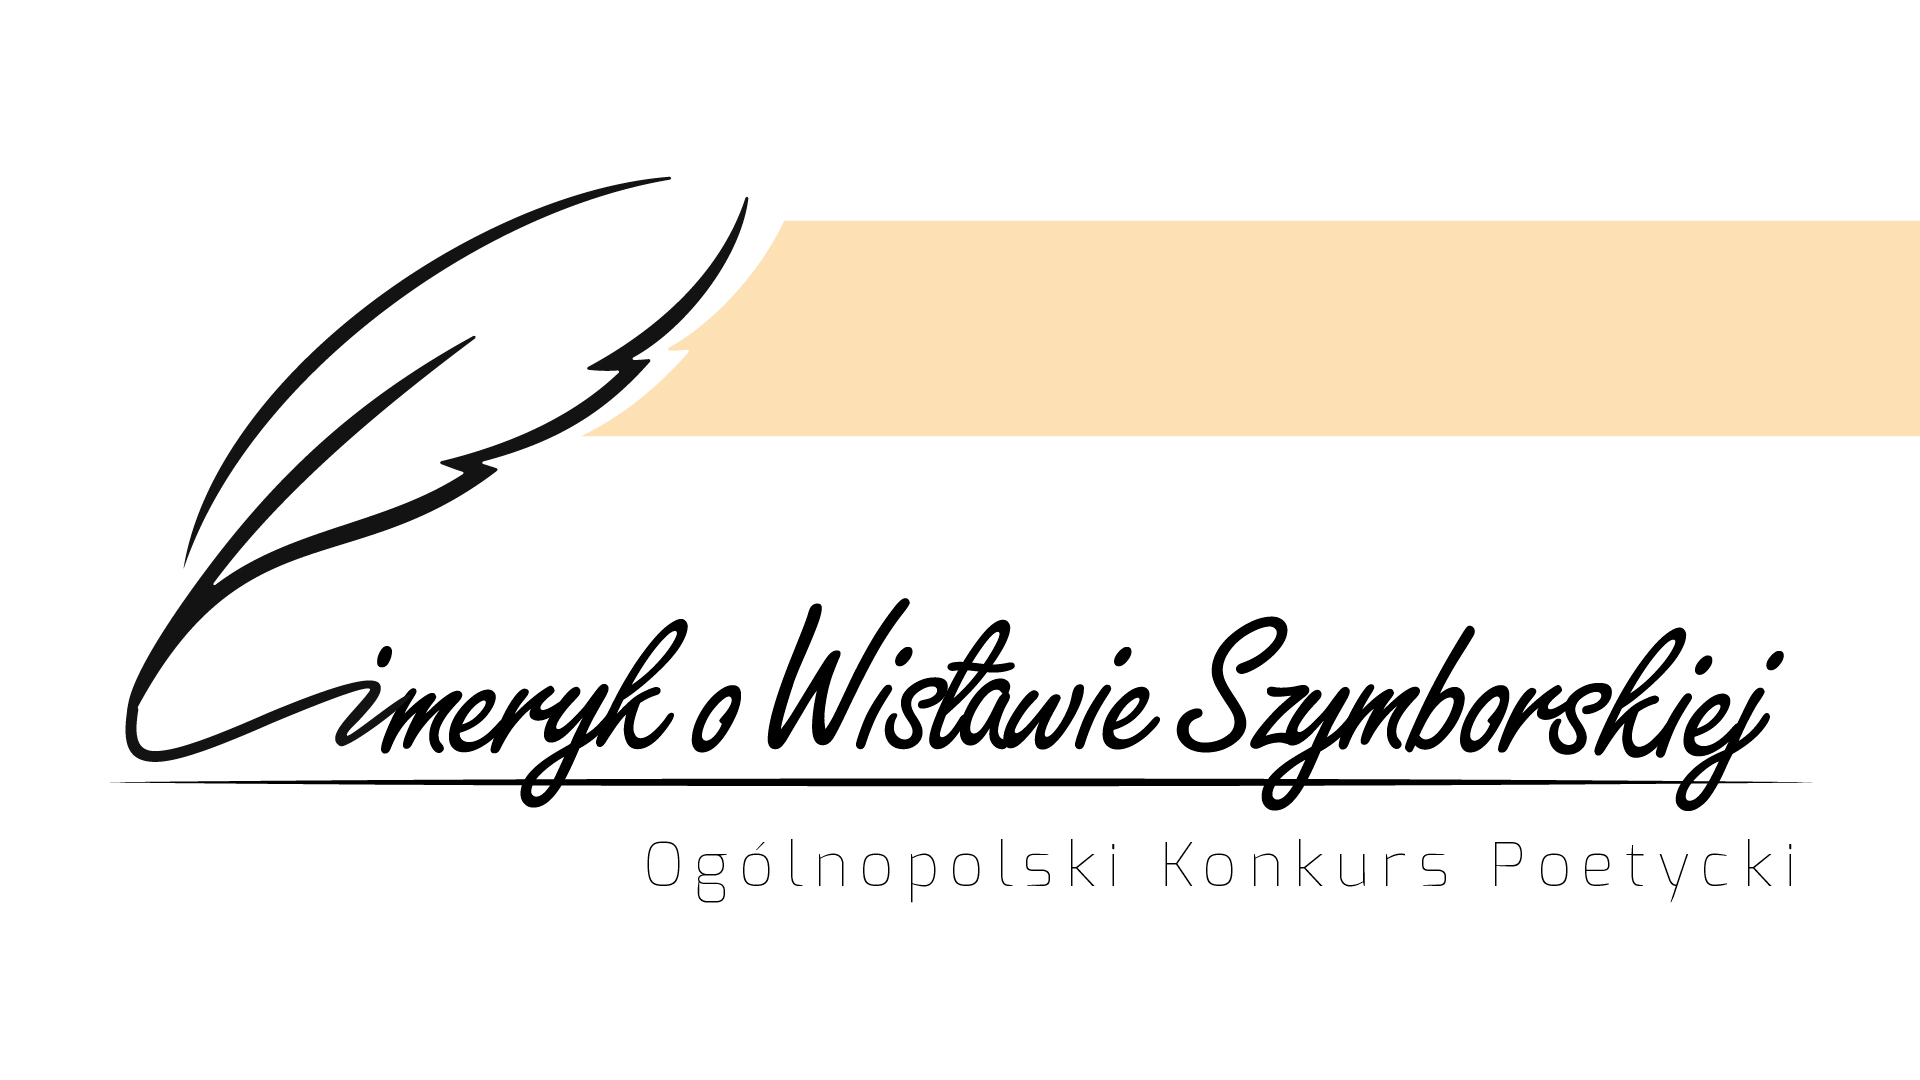 Konkurs poetycki „Limeryk o Wisławie Szymborskiej”